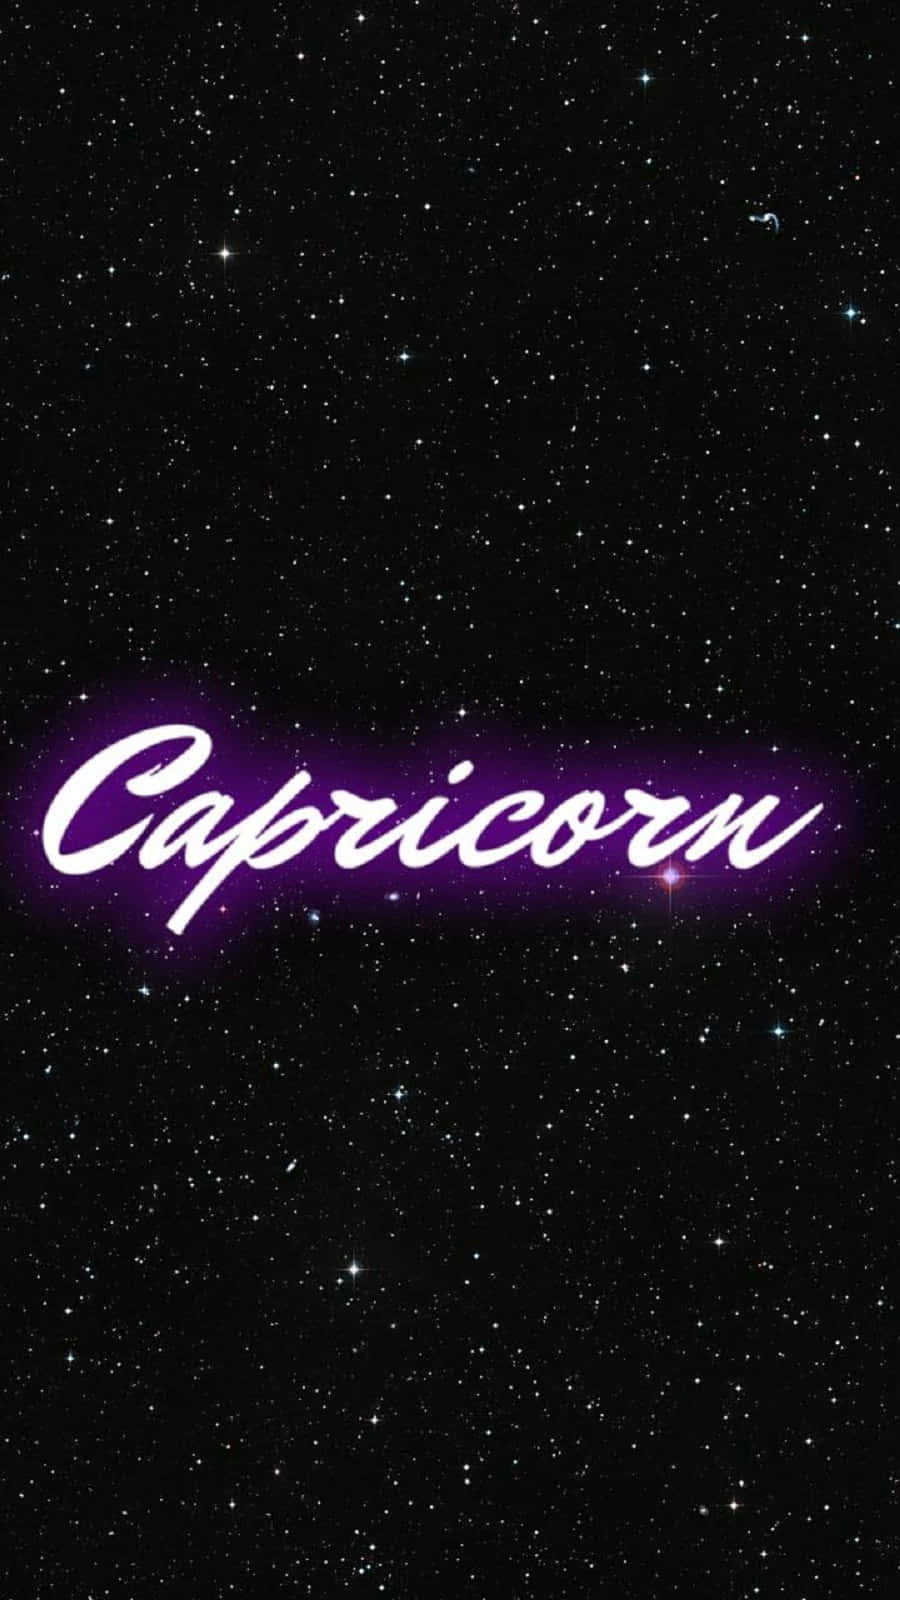 Capricorn Zodiac Symbol on a Starry Sky